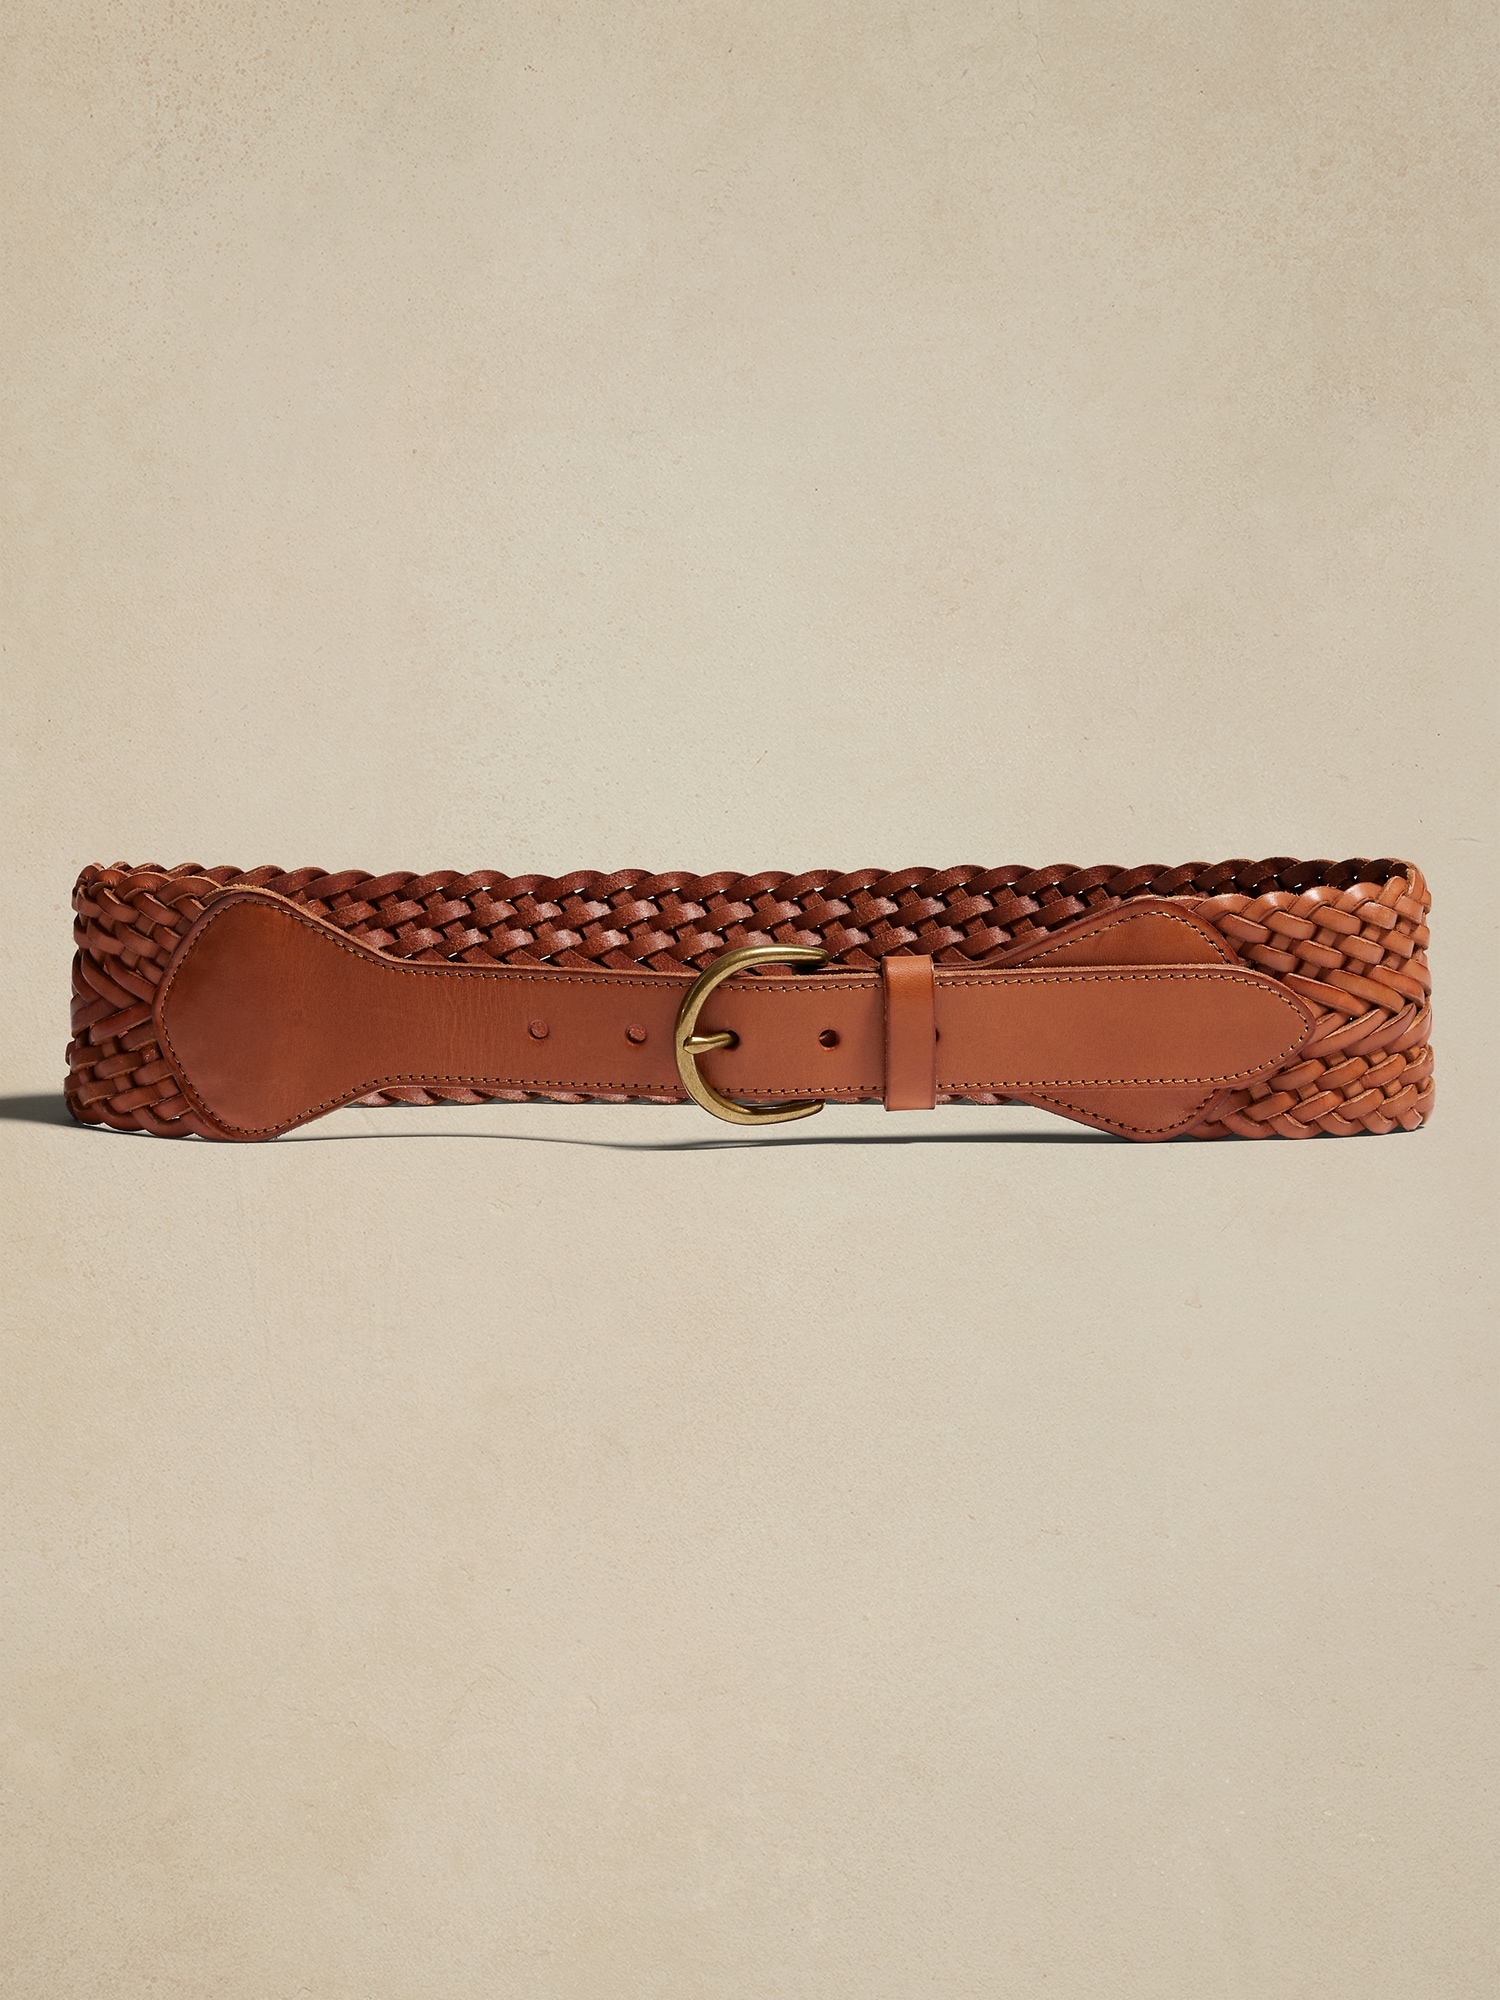 Bananarepublic Treccia Braided Leather Waist Belt